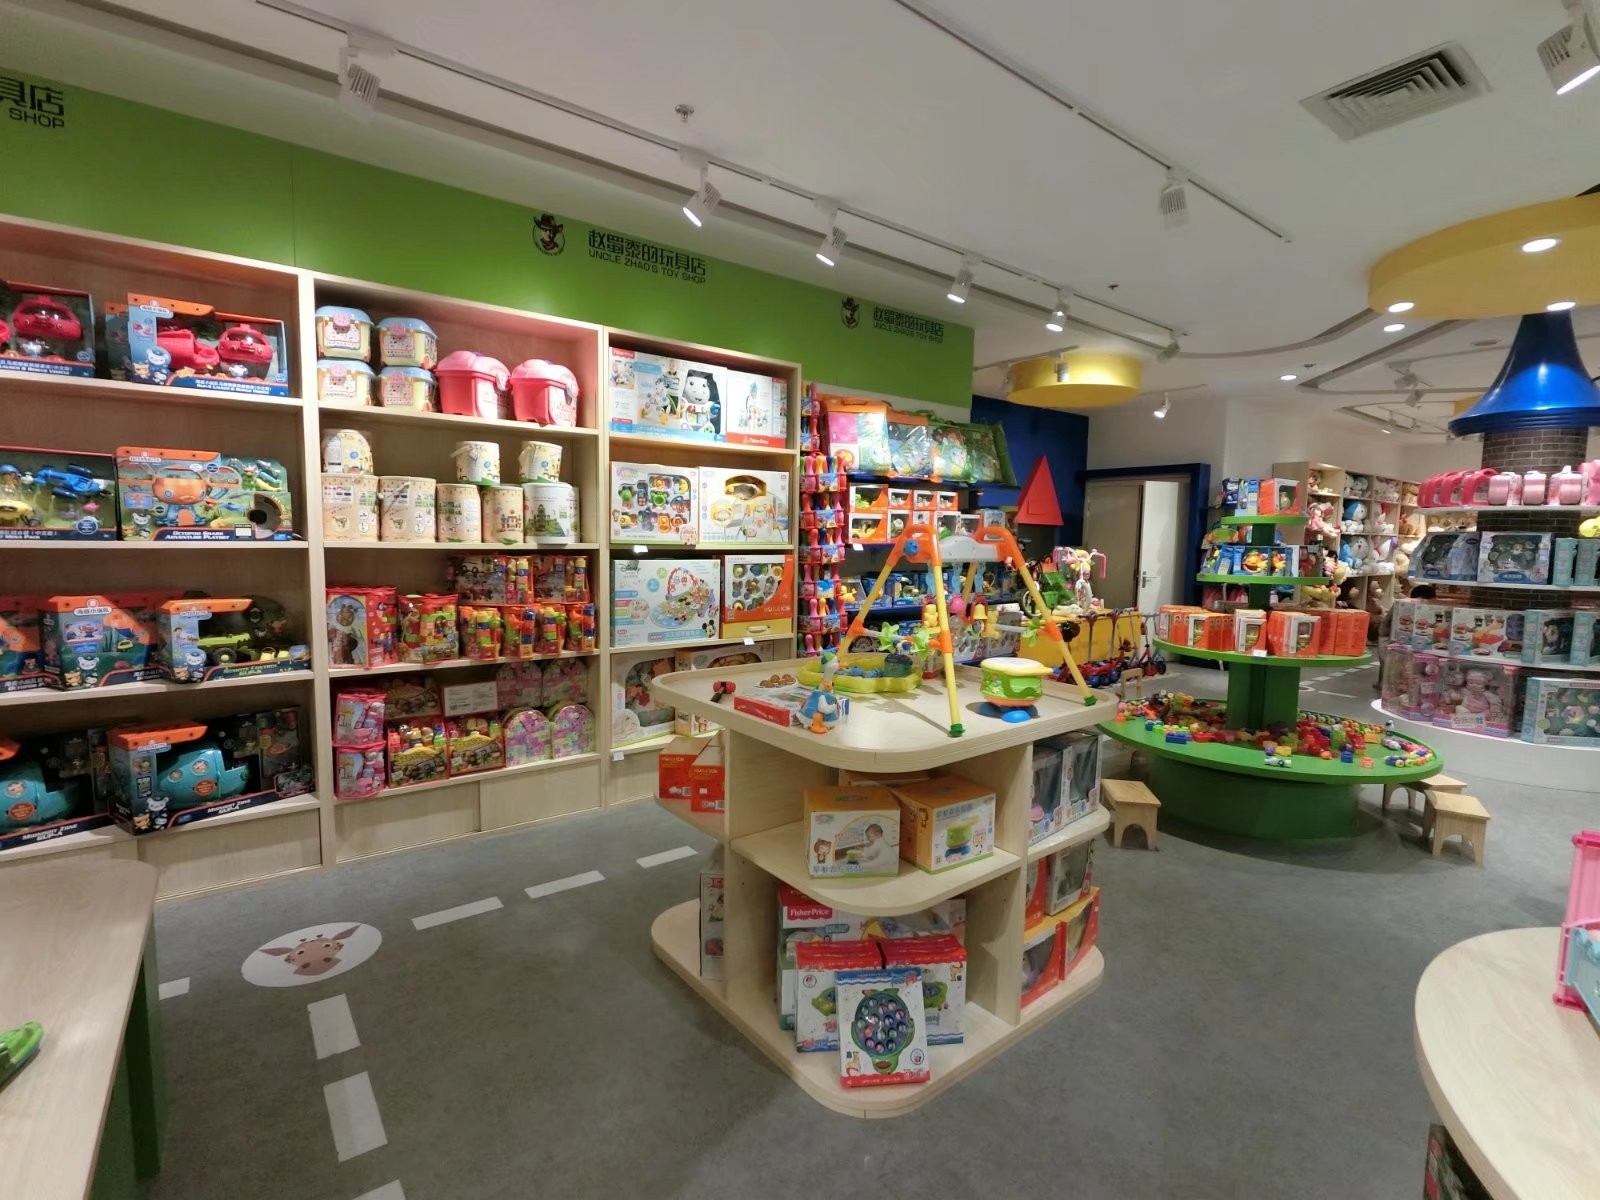 玩具门店实景拍摄 - 广州北斗摄影公司